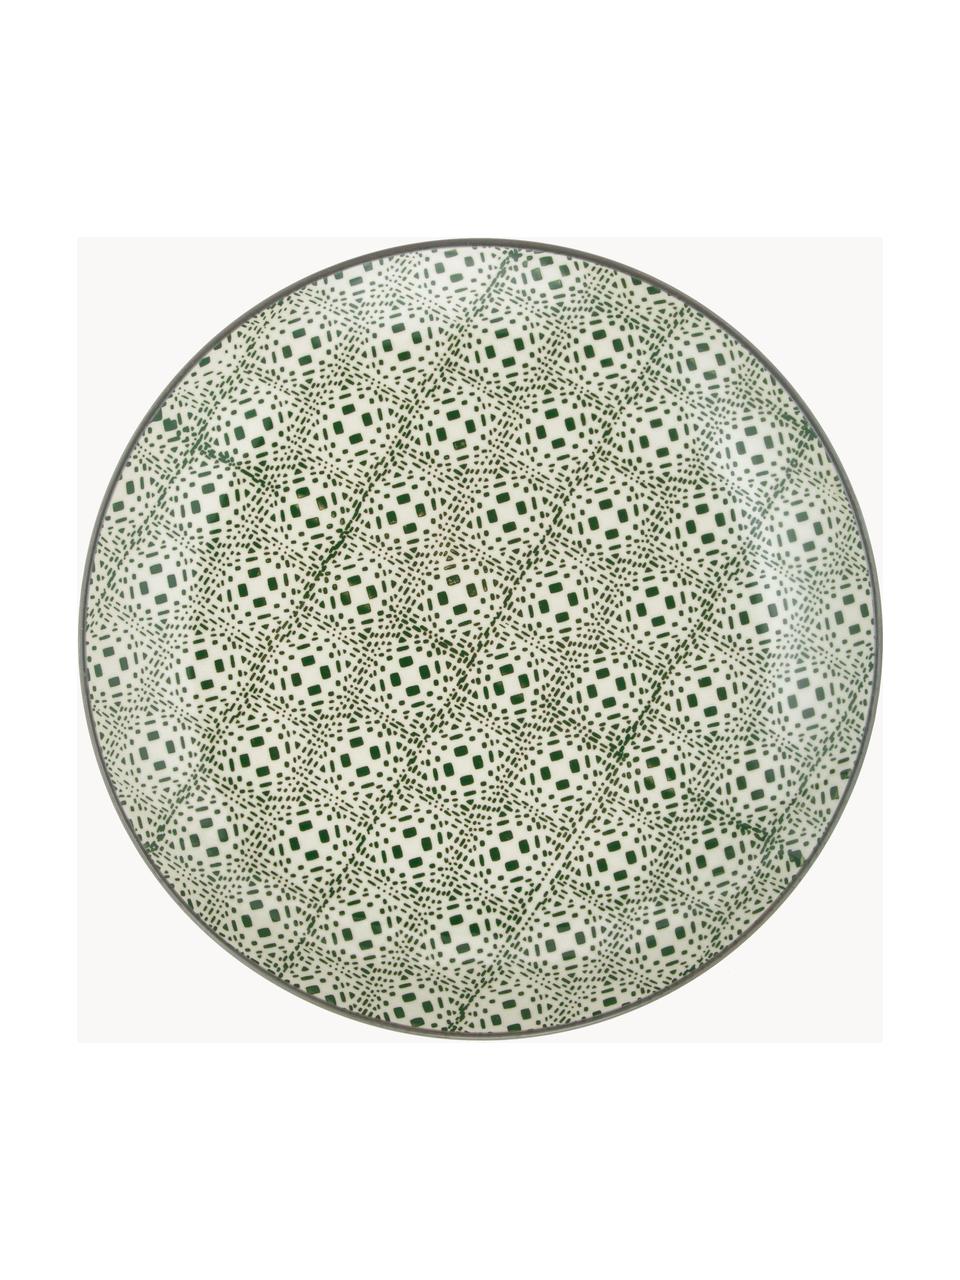 Ontbijtbord Karine met klein patroon, set van 4, Keramiek, Meerkleurig, Ø 20 cm